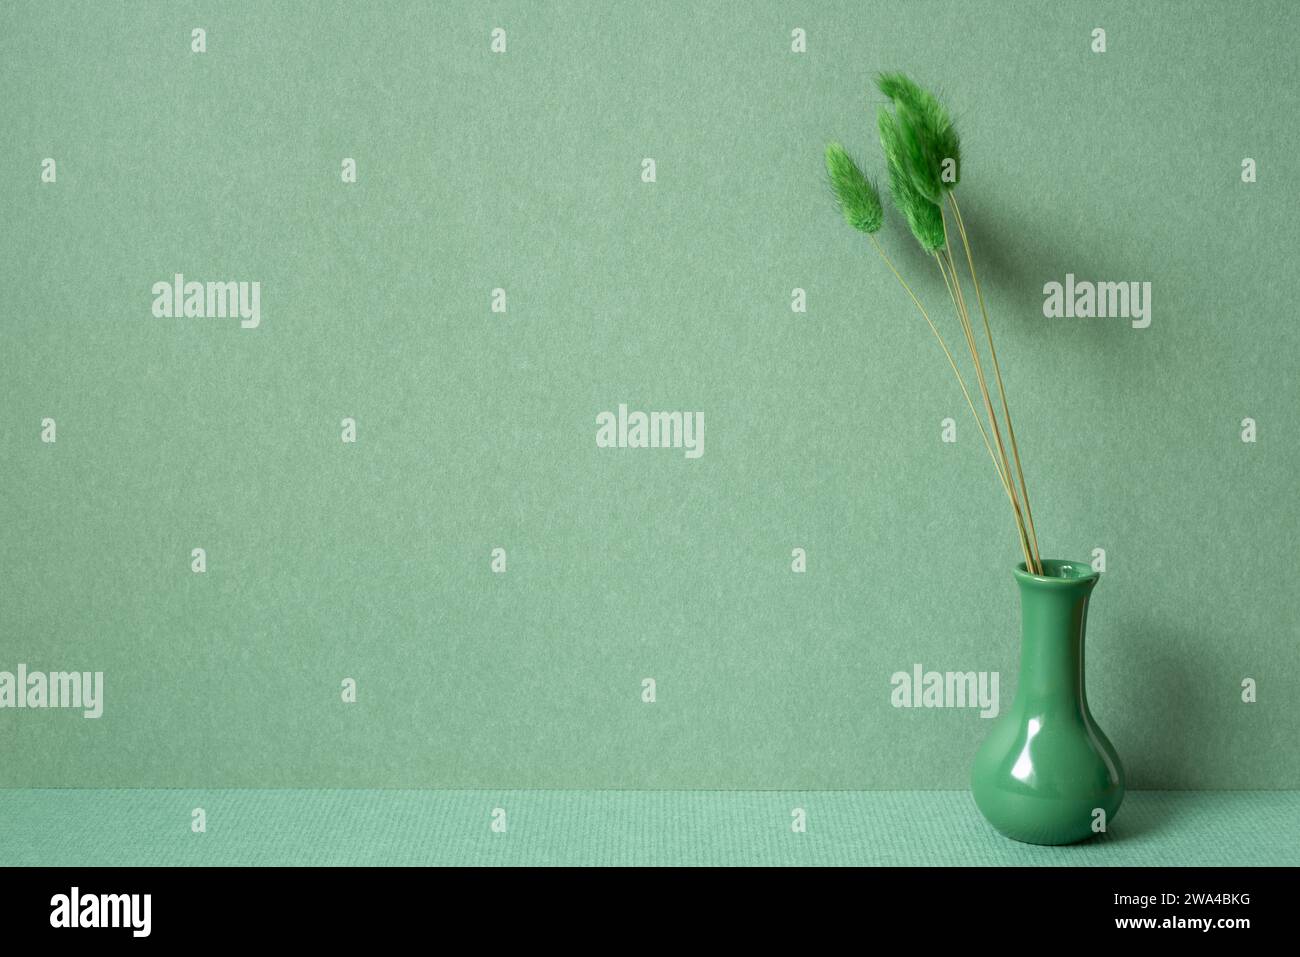 Vase von Lagurus ovatus Schwanzgras auf dem Tisch. Grüner Wandhintergrund. Minimaler Innenraum Stockfoto